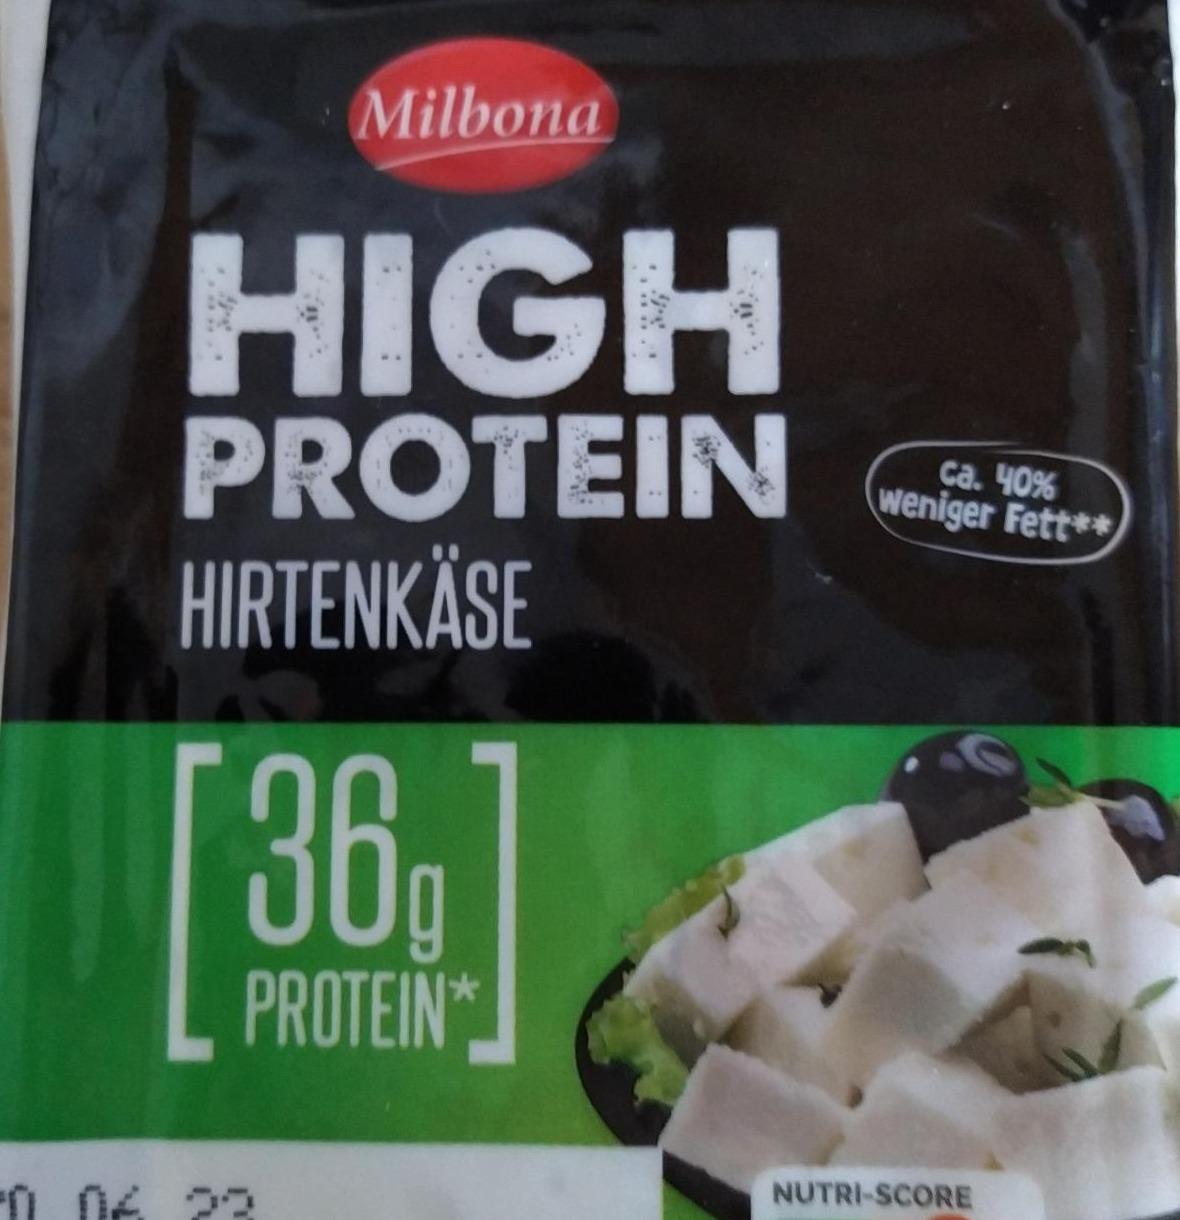 Fotografie - high protein Hirtenkäse 36g protein Milbona